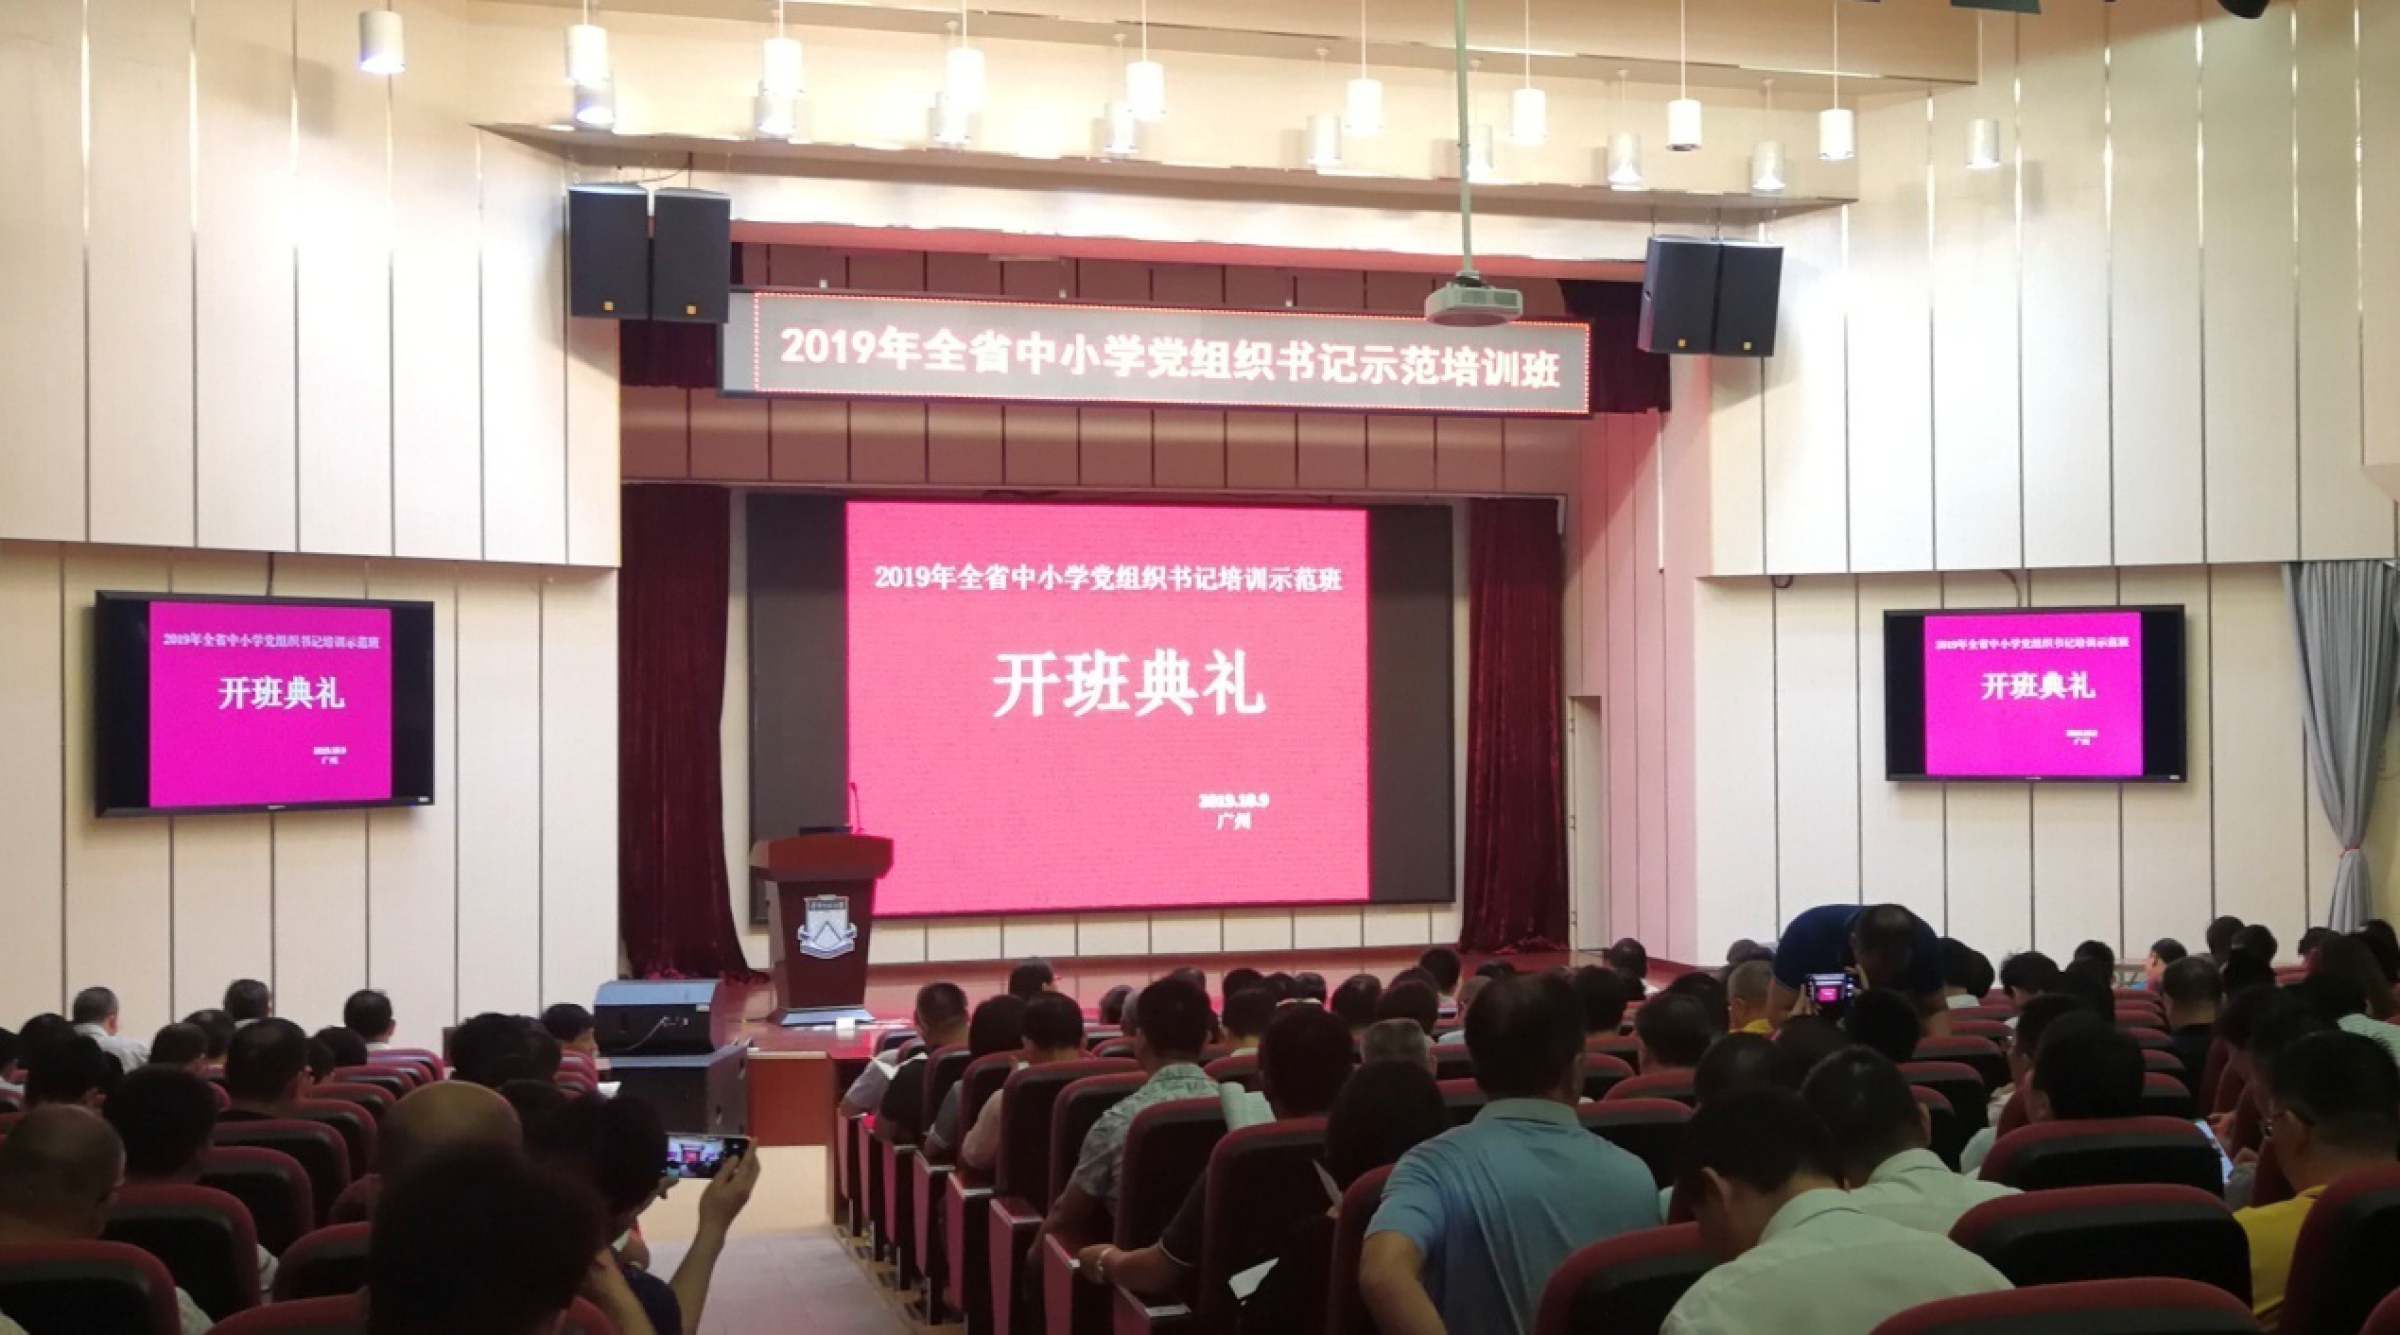 2019年全省中小学党组织书记培训示范班在我校举行开班典礼